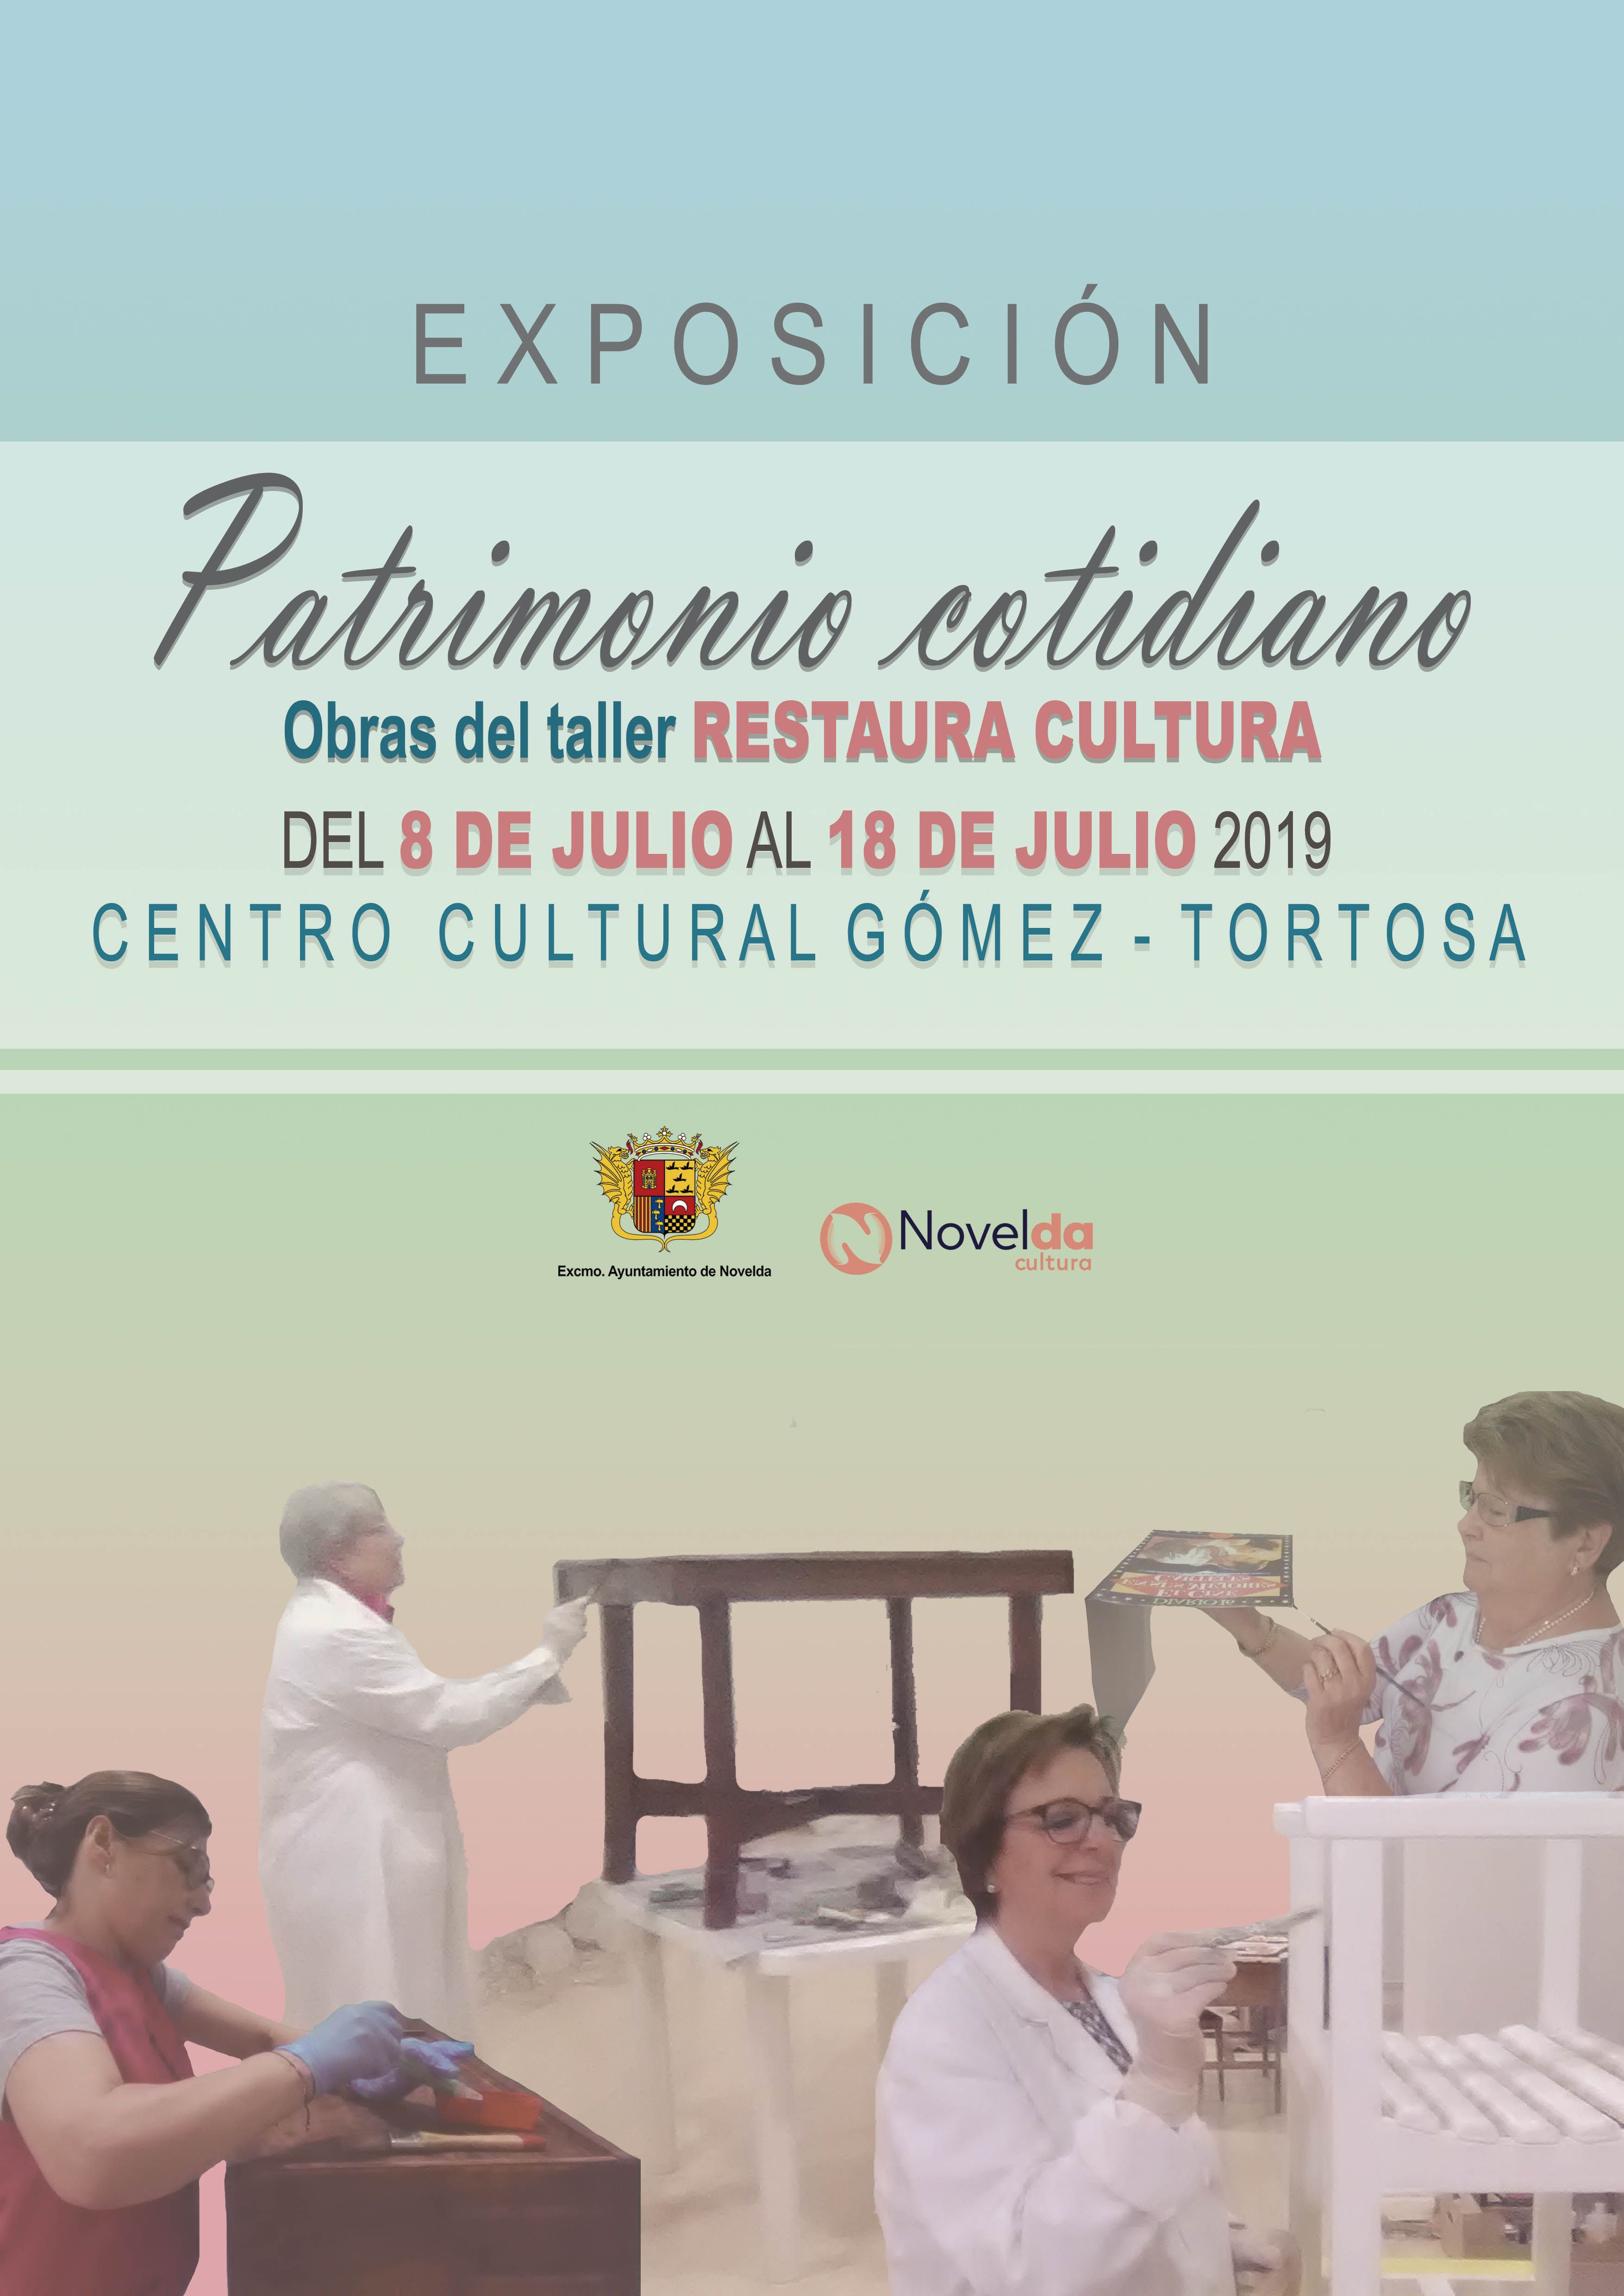 Ayuntamiento de Novelda EXPO-RESTAURA2 Exposición "Patrimonio Cotidiano" 